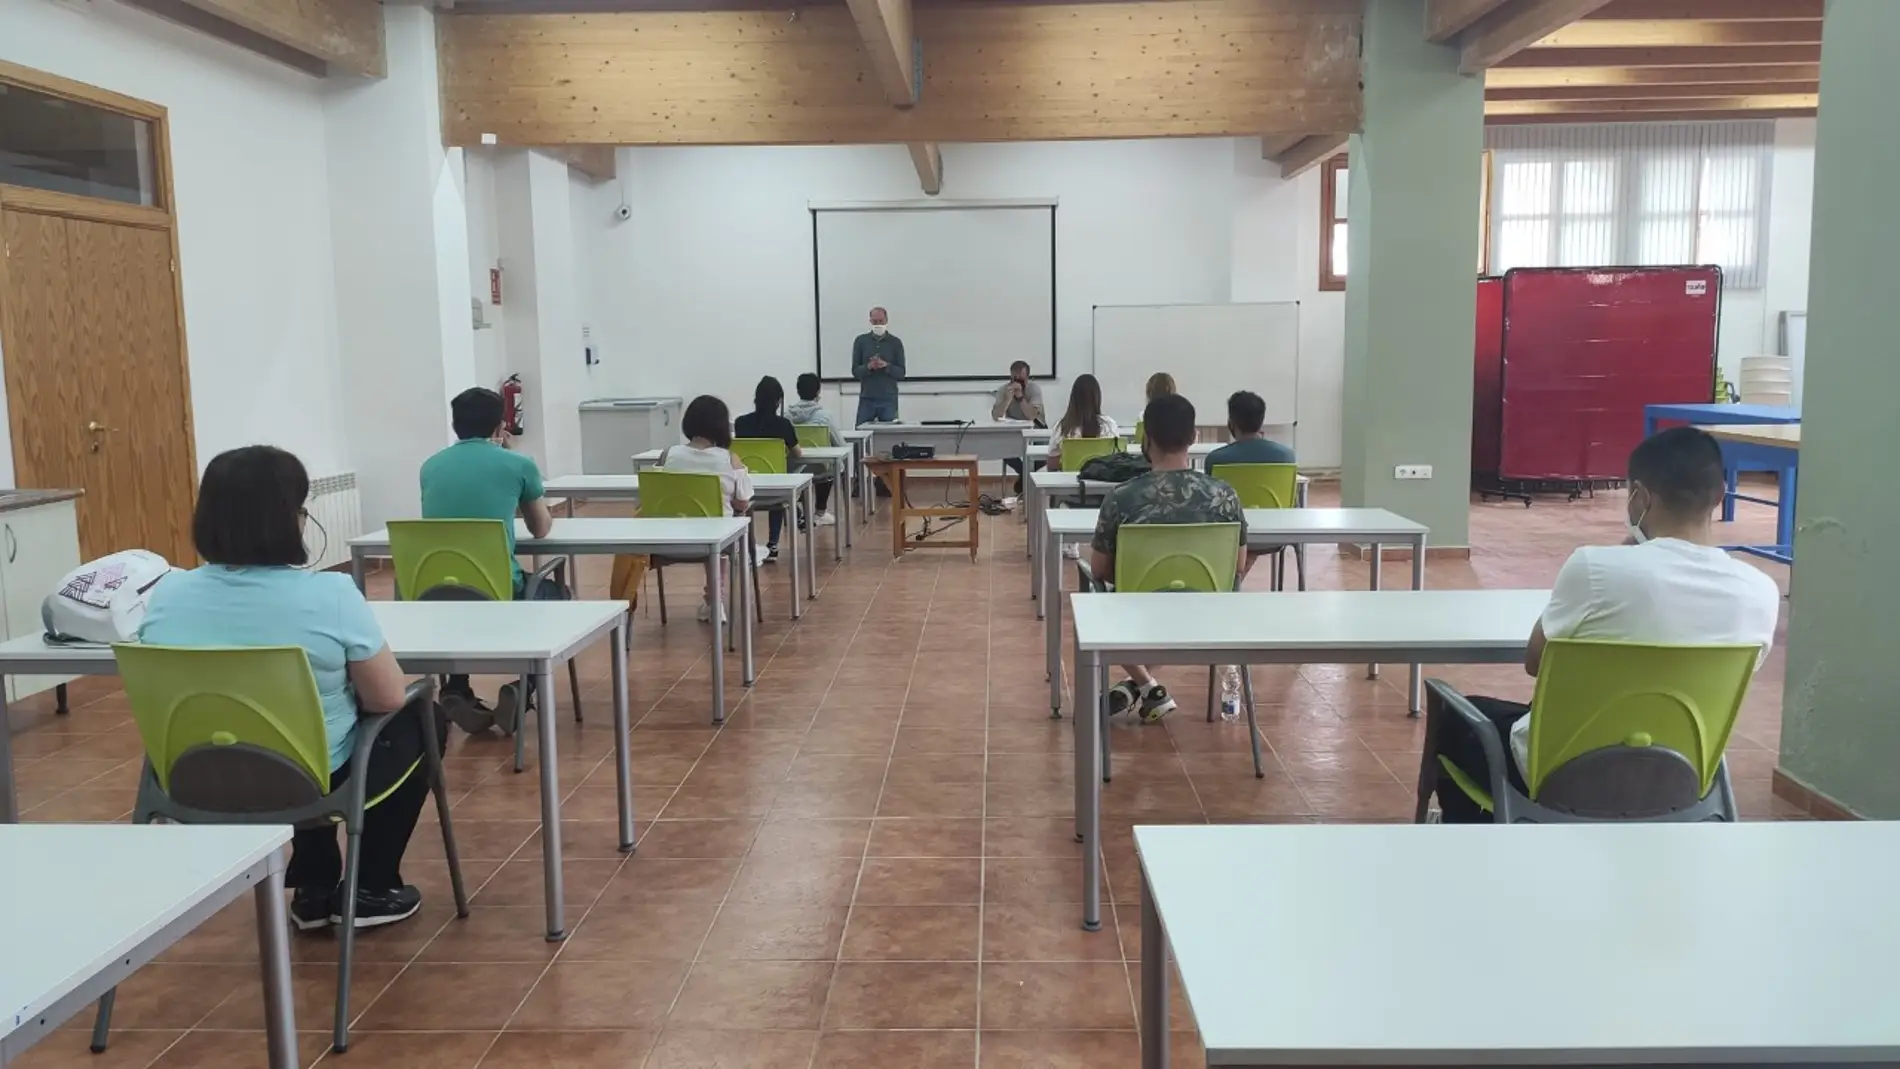 Primera clase teórica en el taller de empleo de Andorra